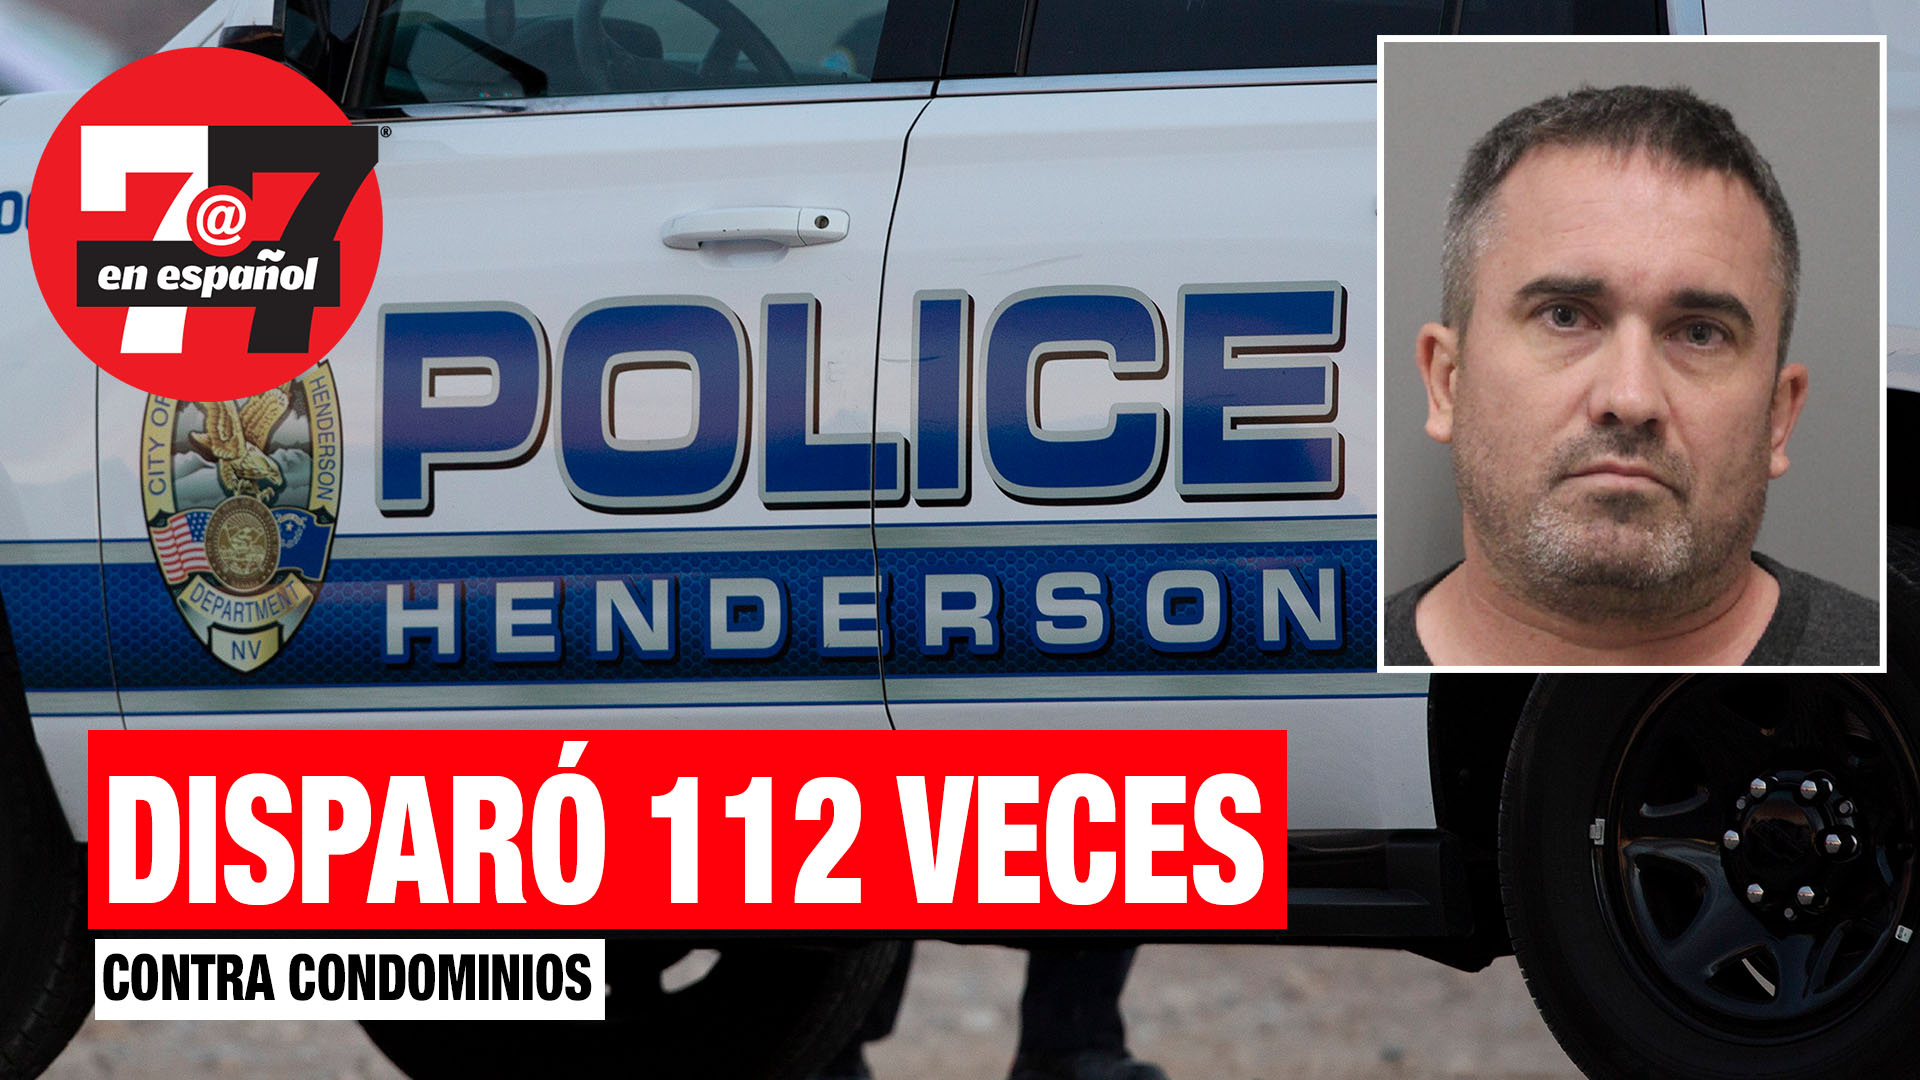 Noticias de Las Vegas | Disparó 112 veces hacia condominios en Henderson